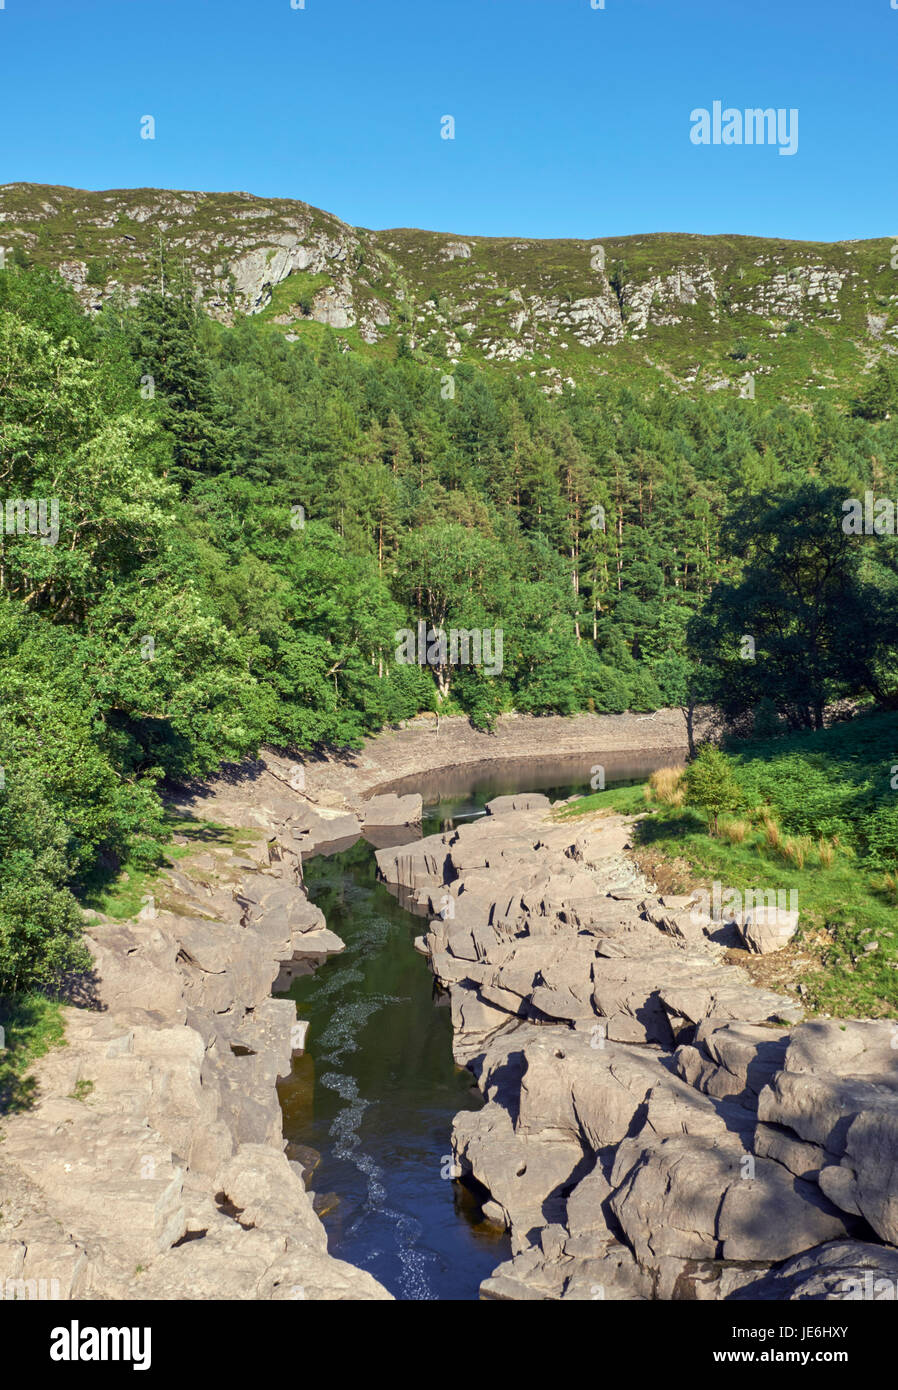 Elan, en aval du barrage y Garreg stylo. Elan Valley, près de Tulle, Powys, Pays de Galles. Banque D'Images